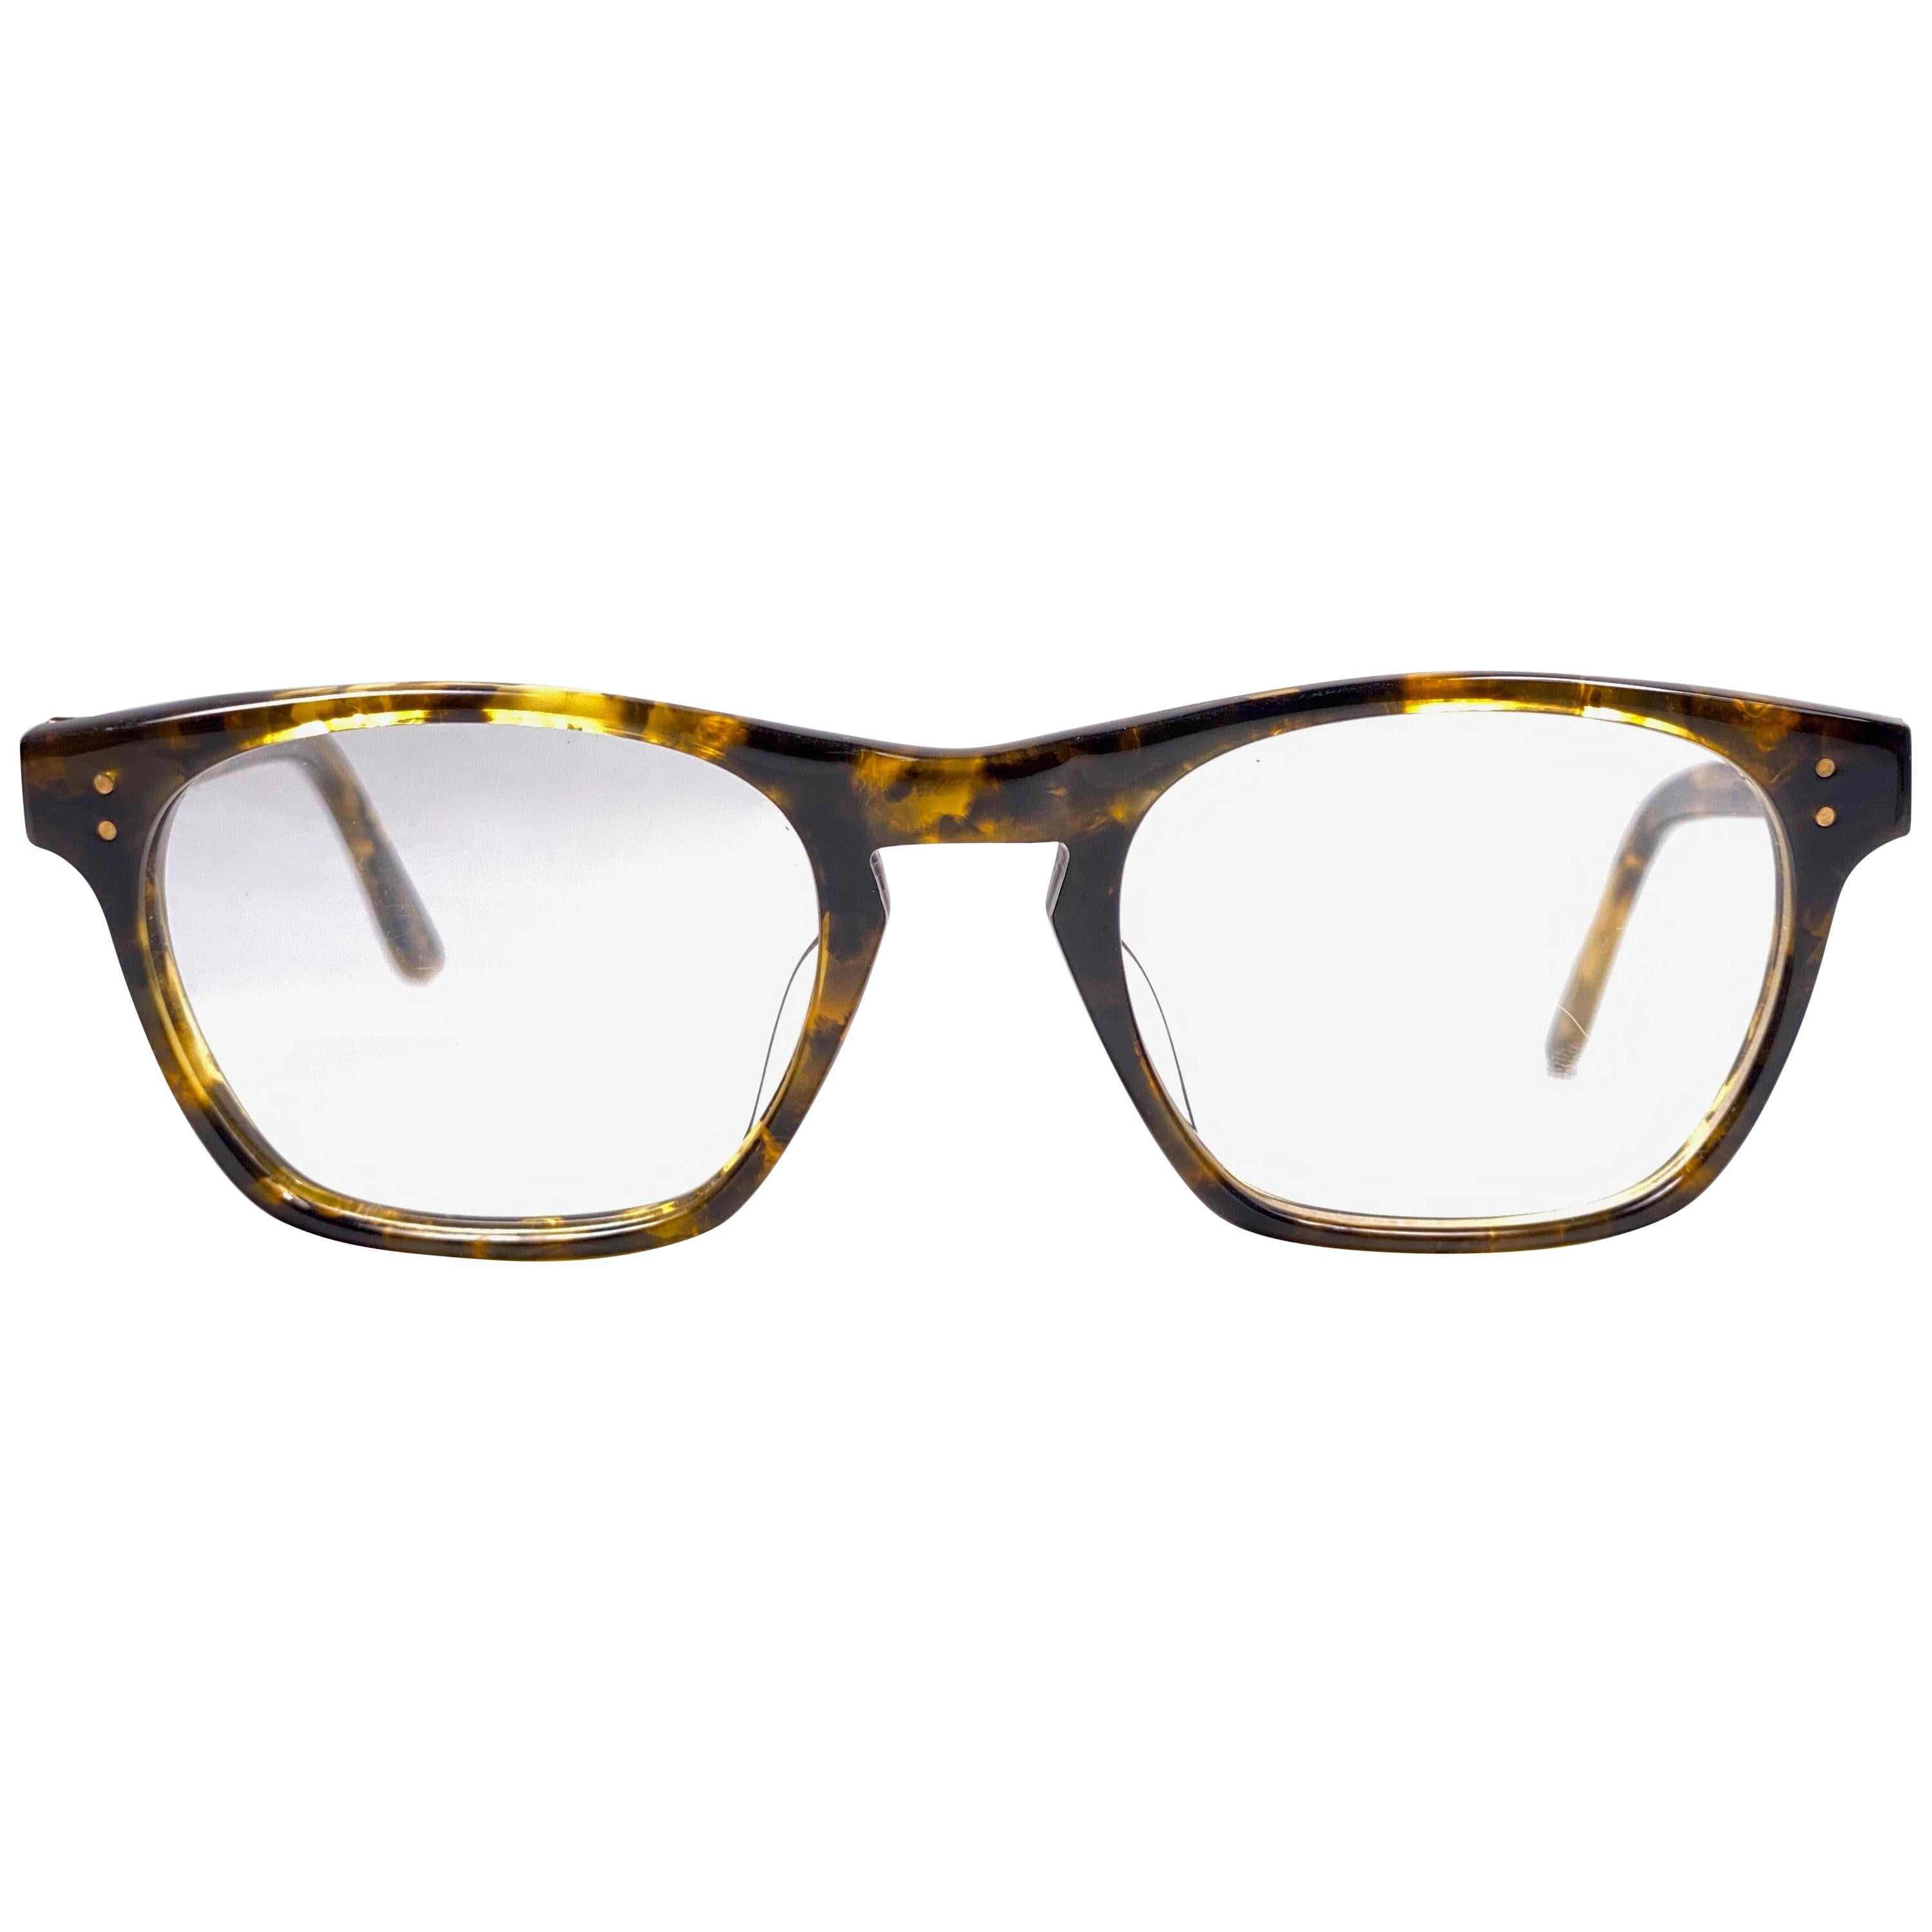 New Vintage Jean Paul Gaultier 55 0073 Prescription Tortoise Japan Sunglasses 